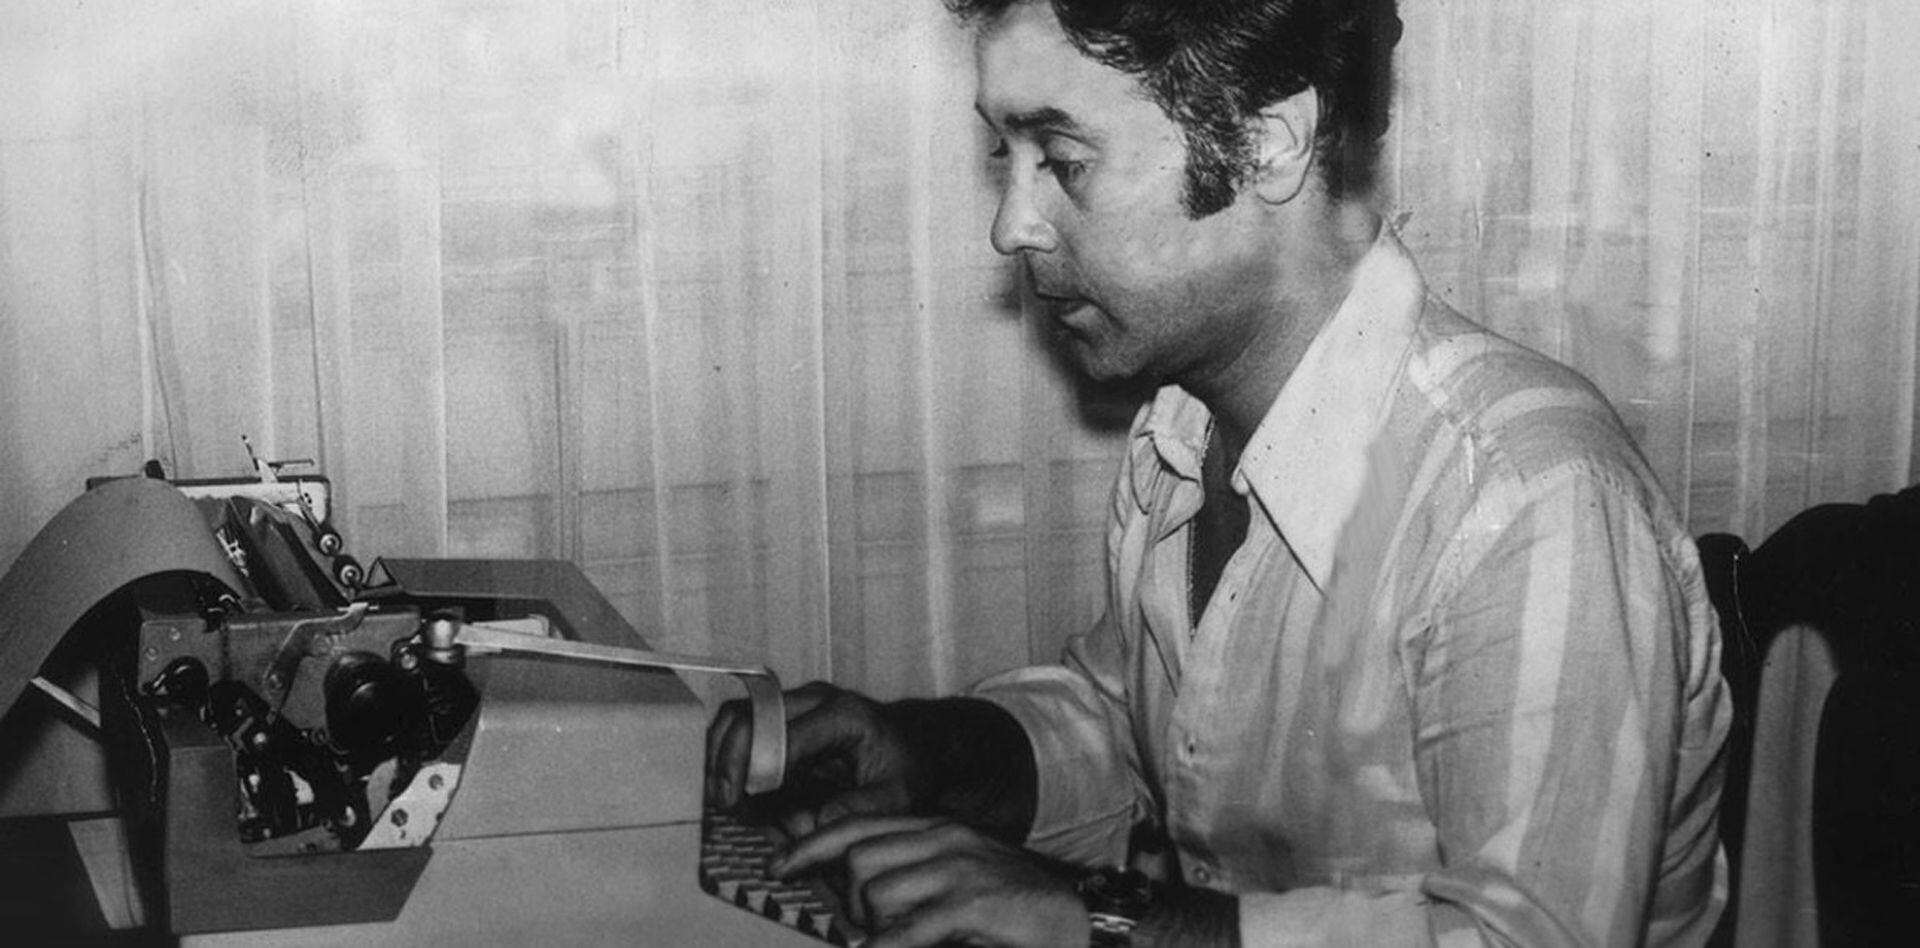 Migré, en su juventud, frente a una máquina de escribir